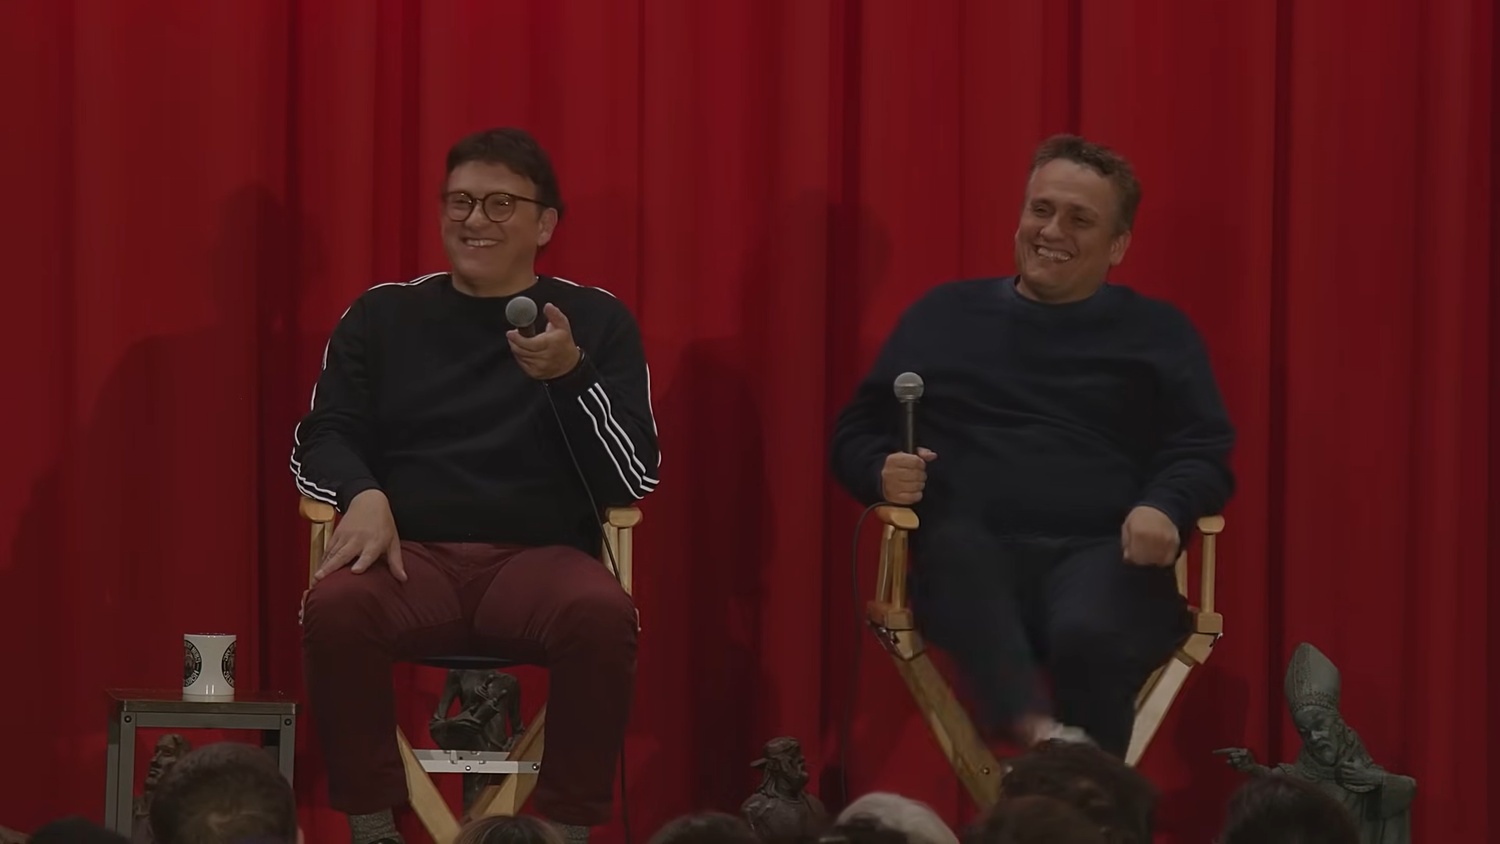 Joe Russo parle des réactions négatives auxquelles il a été confronté après avoir publié une vidéo amusante sur un chien se moquant de Martin Scorsese